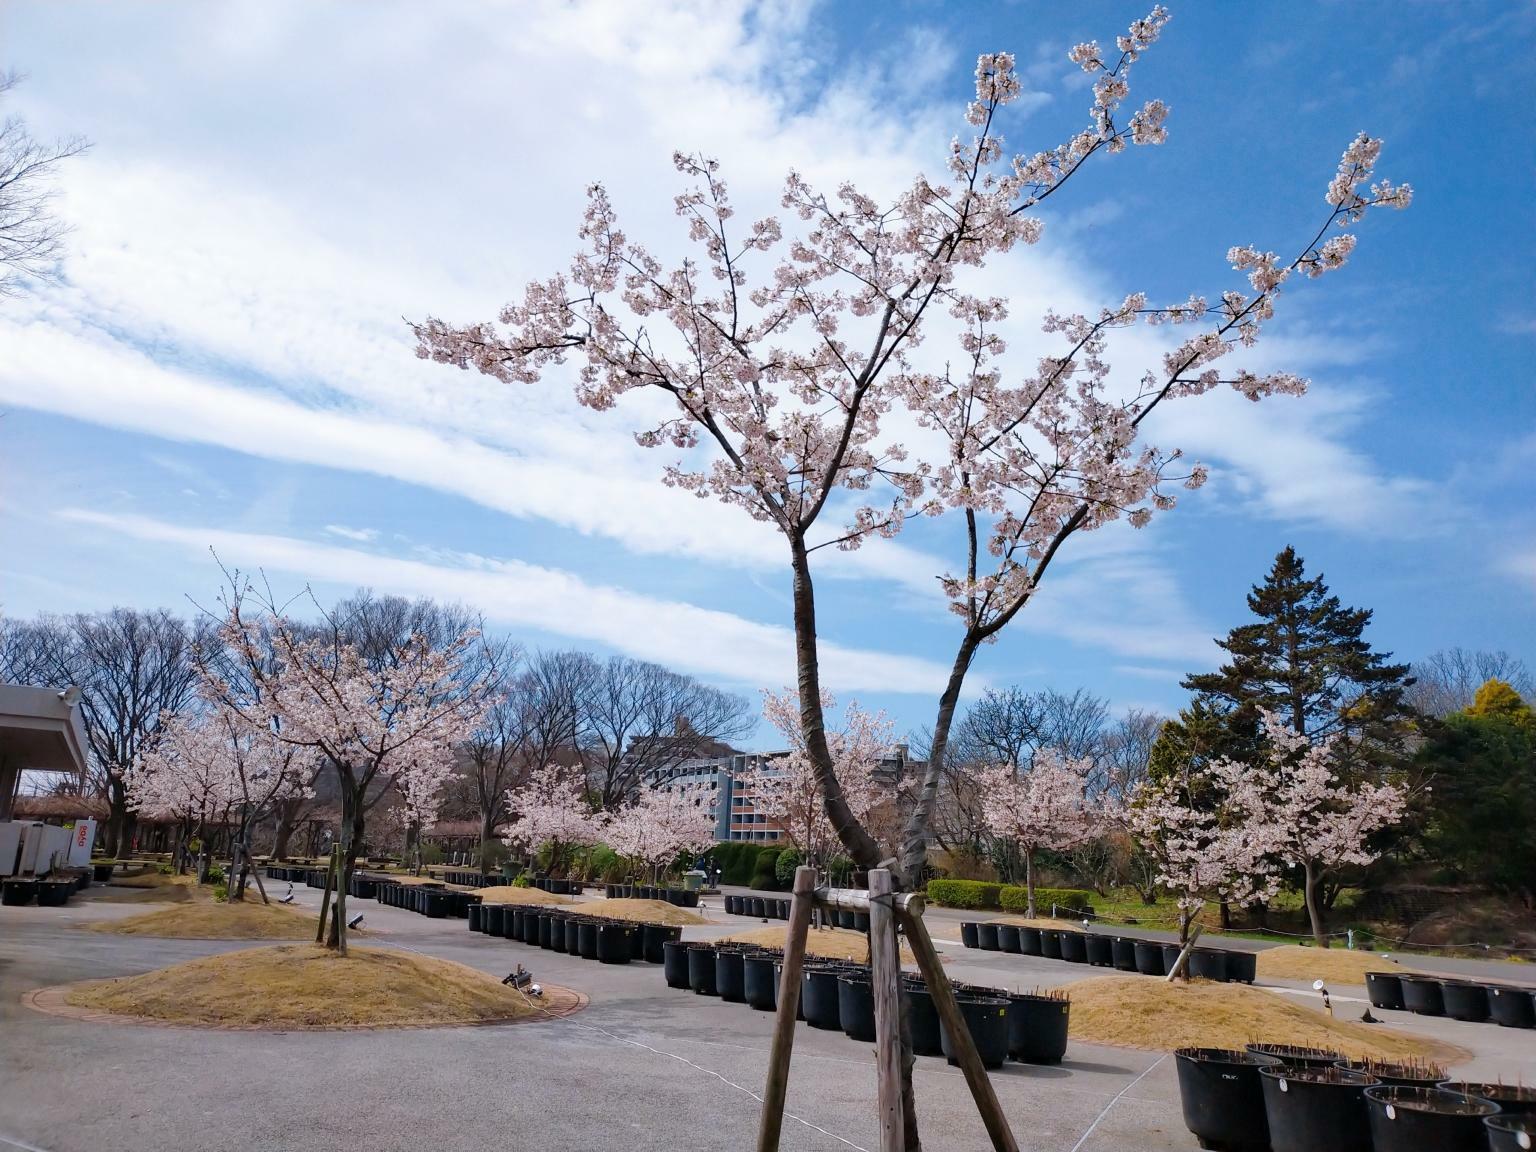 すれ違う多くの人が桜を撮影しており、写真愛好者にとっても魅力的な場所であることが分かります。